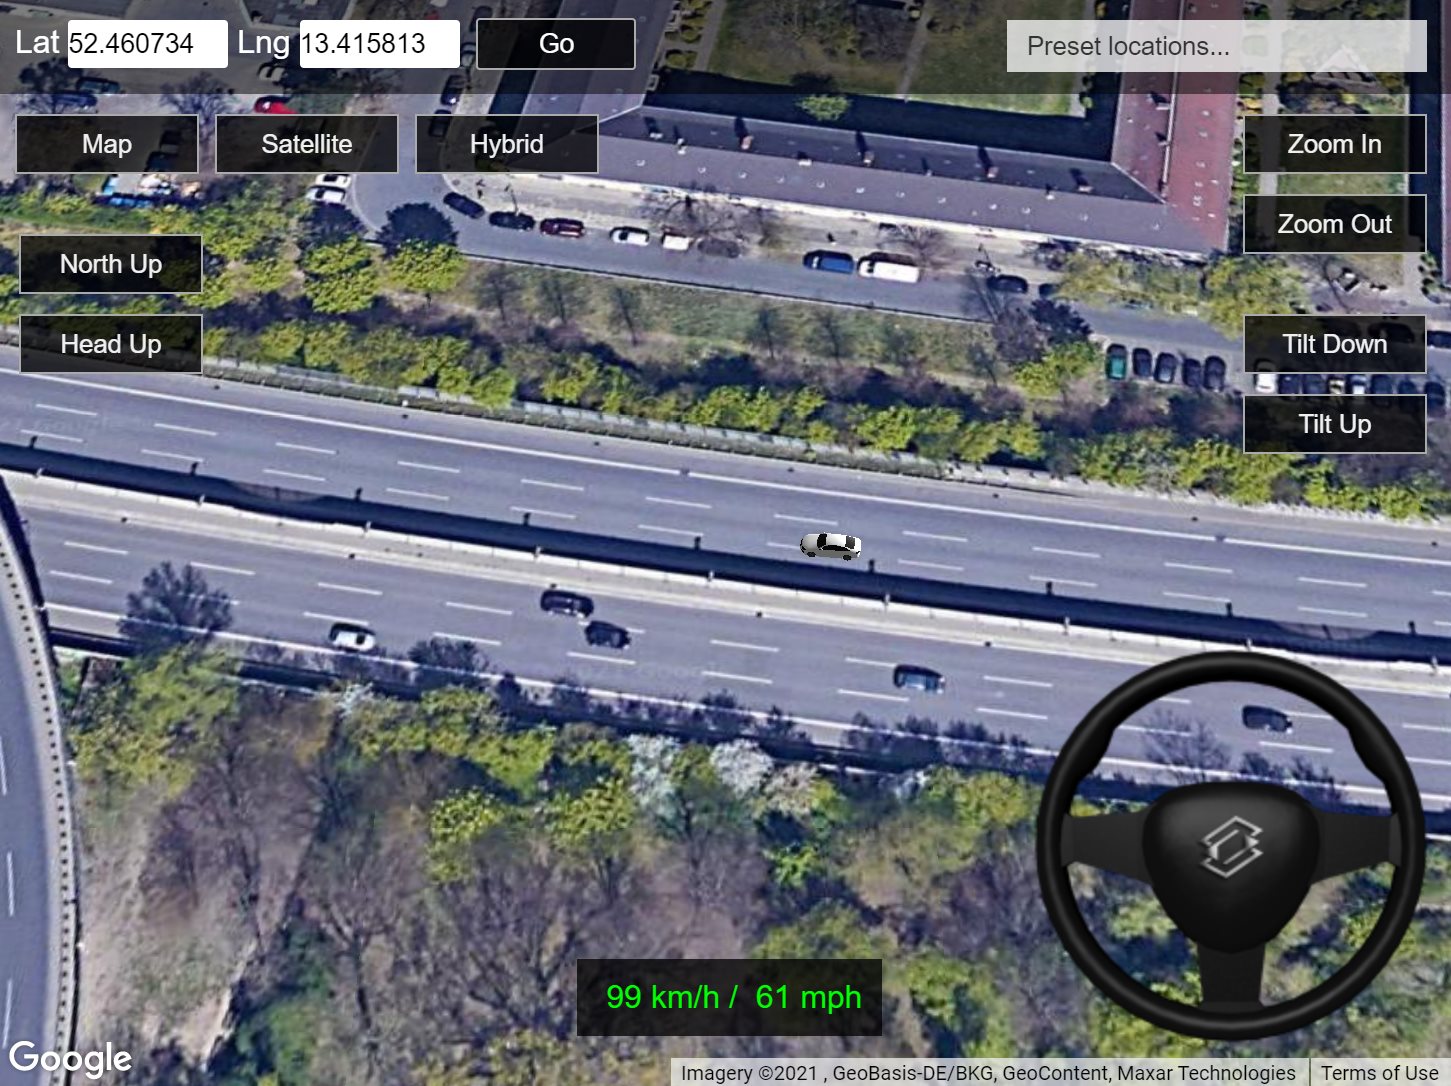 Driving Simulator em 3D: pilote um carro pelo Google Maps de onde